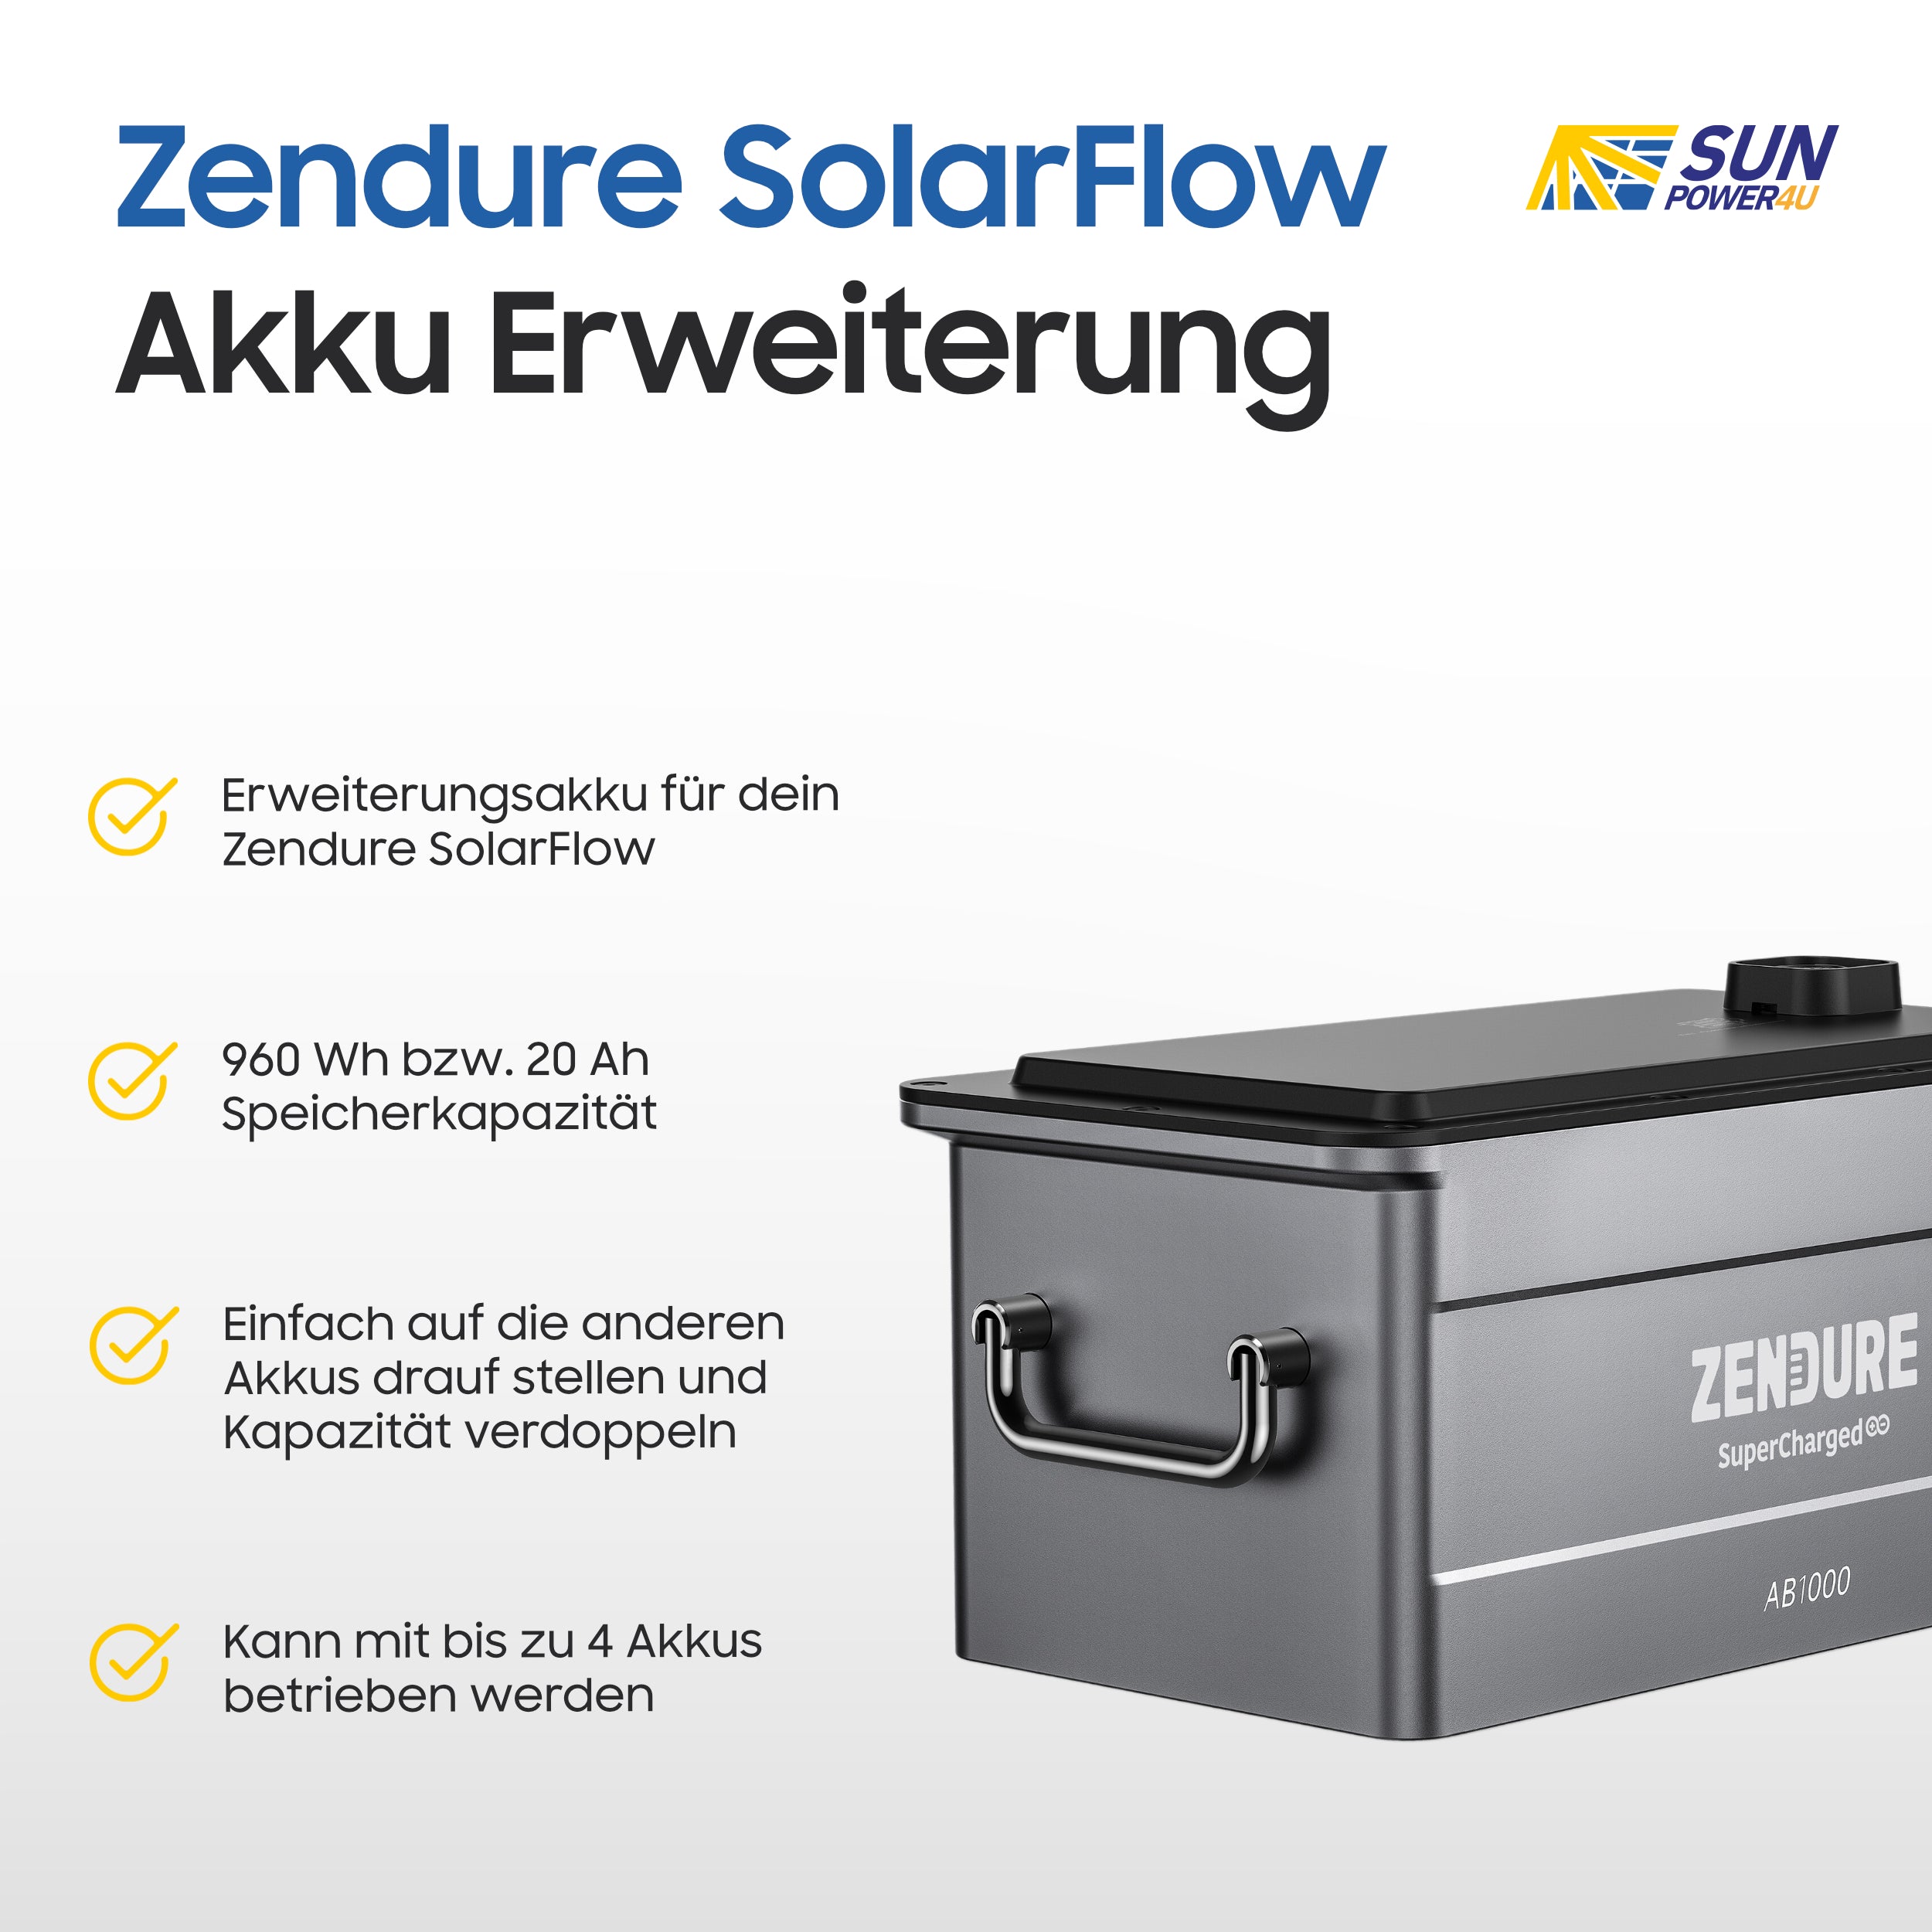 Zendure Solarflow Speicher - AB1000 960Wh Erweiterungsakku